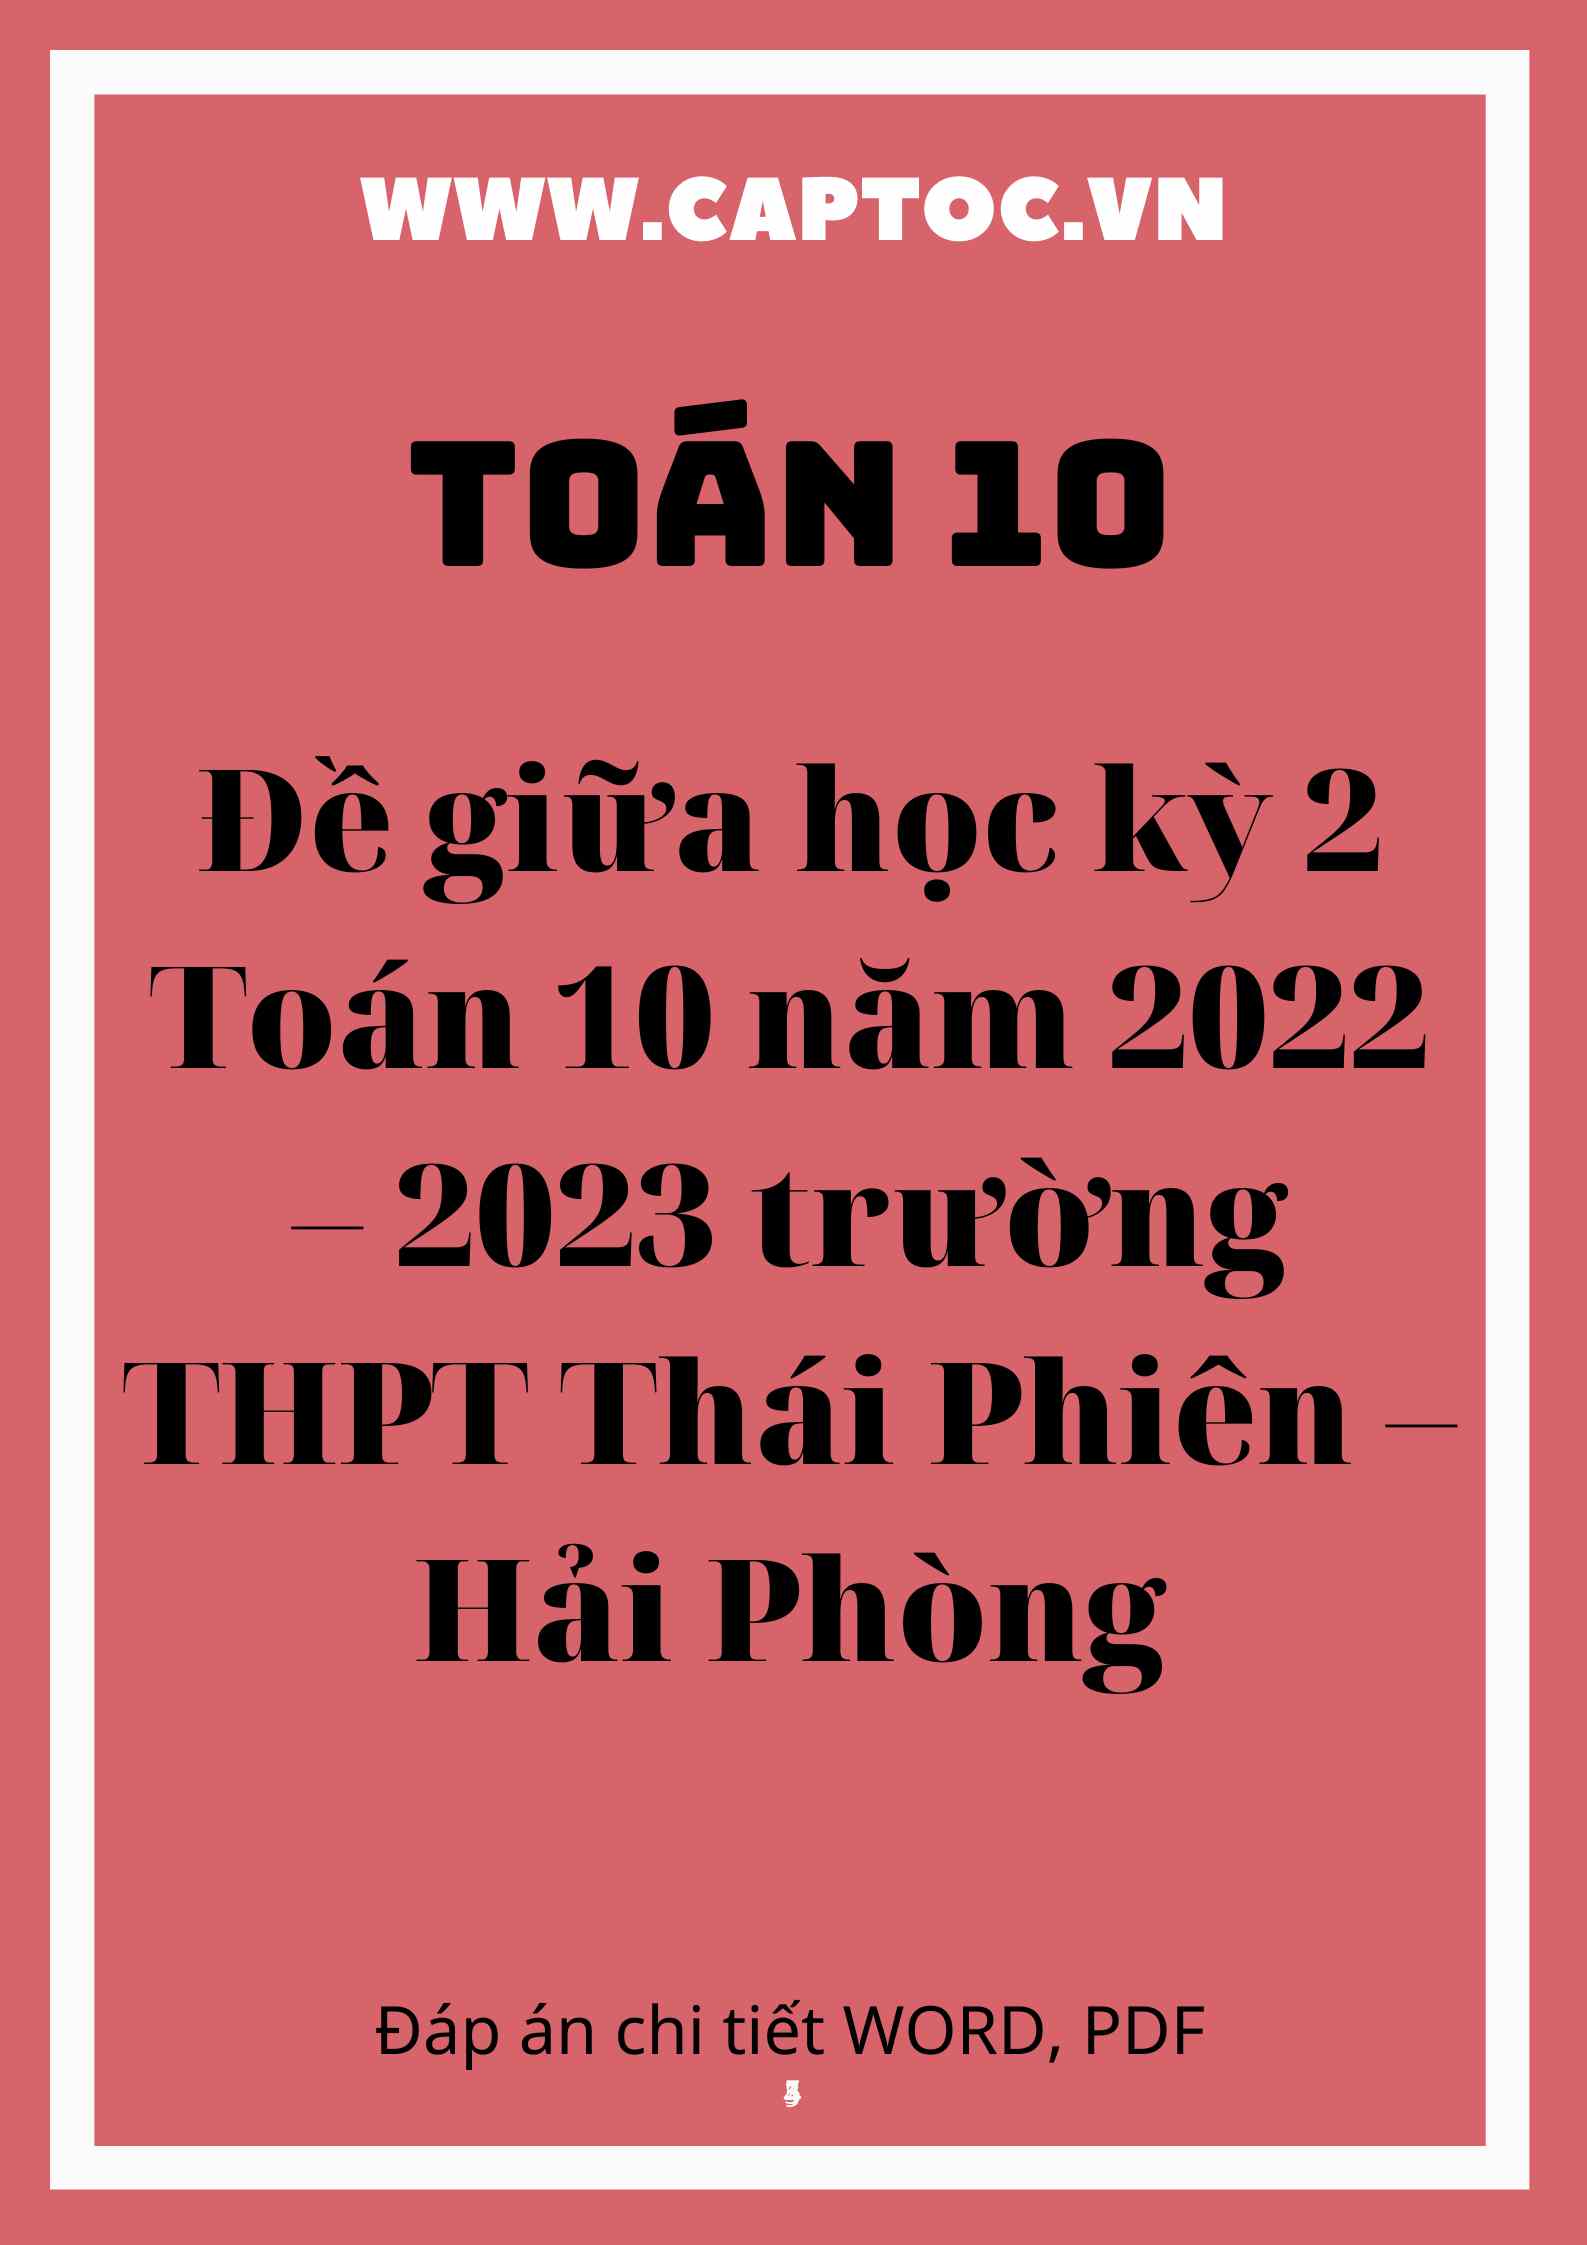 Đề giữa học kỳ 2 Toán 10 năm 2022 – 2023 trường THPT Thái Phiên – Hải Phòng